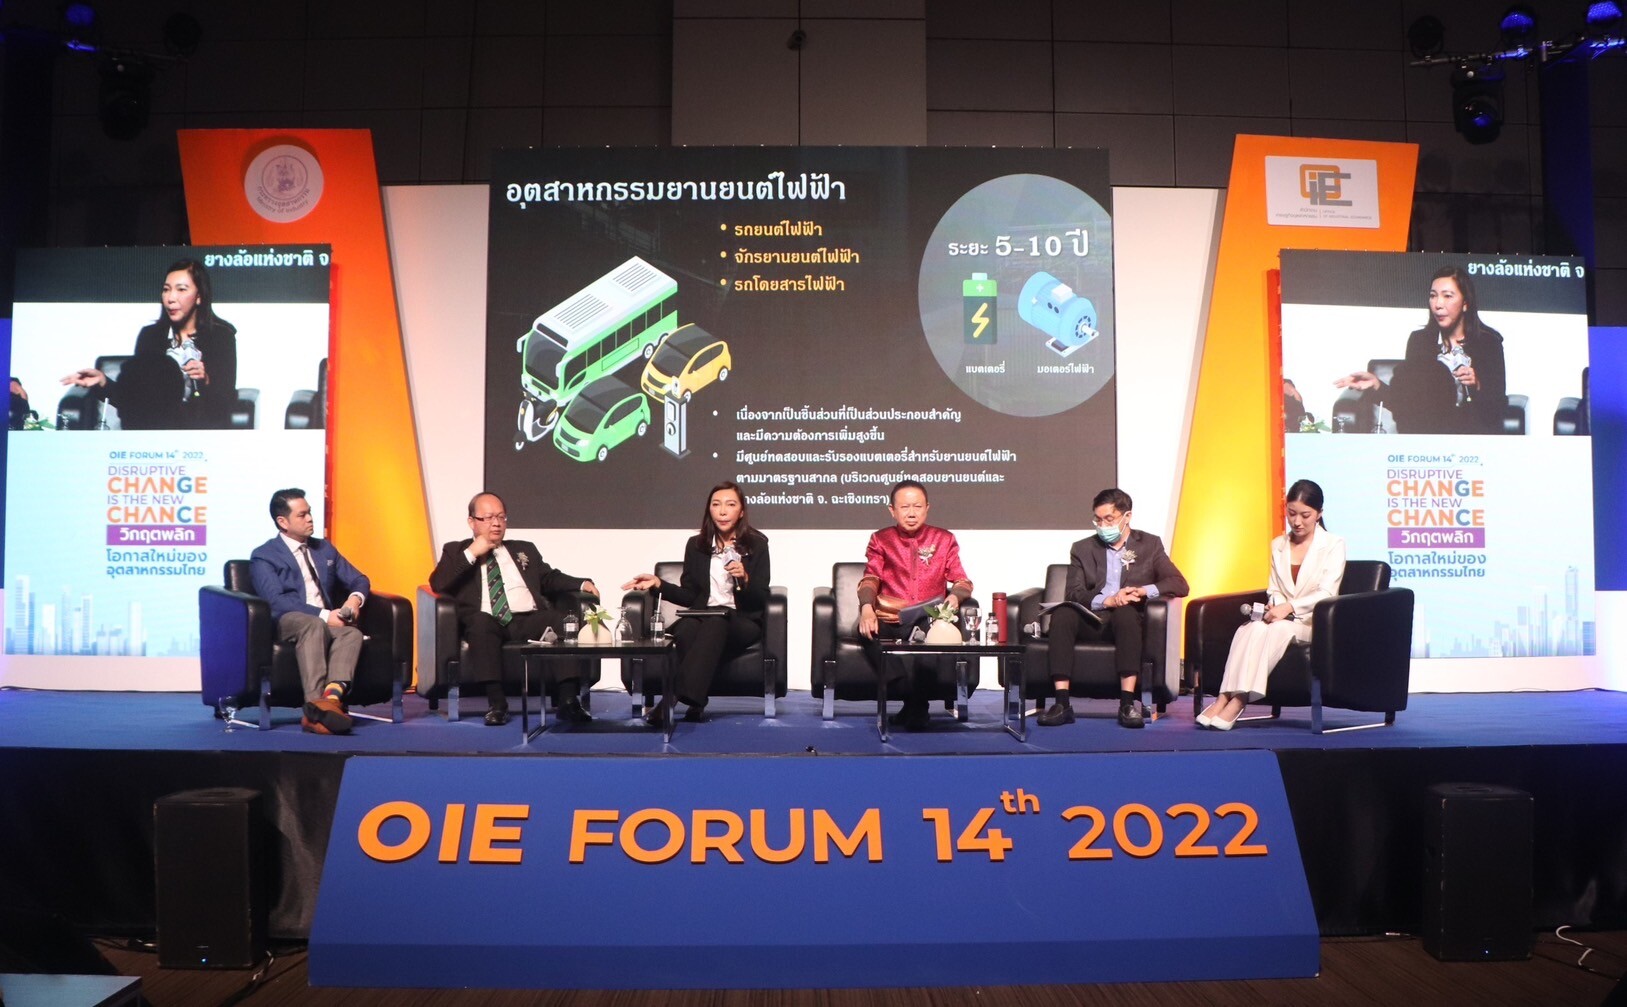 สศอ. จัดงานประจำปี OIE FORUM 2022 ครั้งยิ่งใหญ่ "Disruptive Change is the New Chance วิกฤตพลิก โอกาสใหม่ของอุตสาหกรรมไทย"